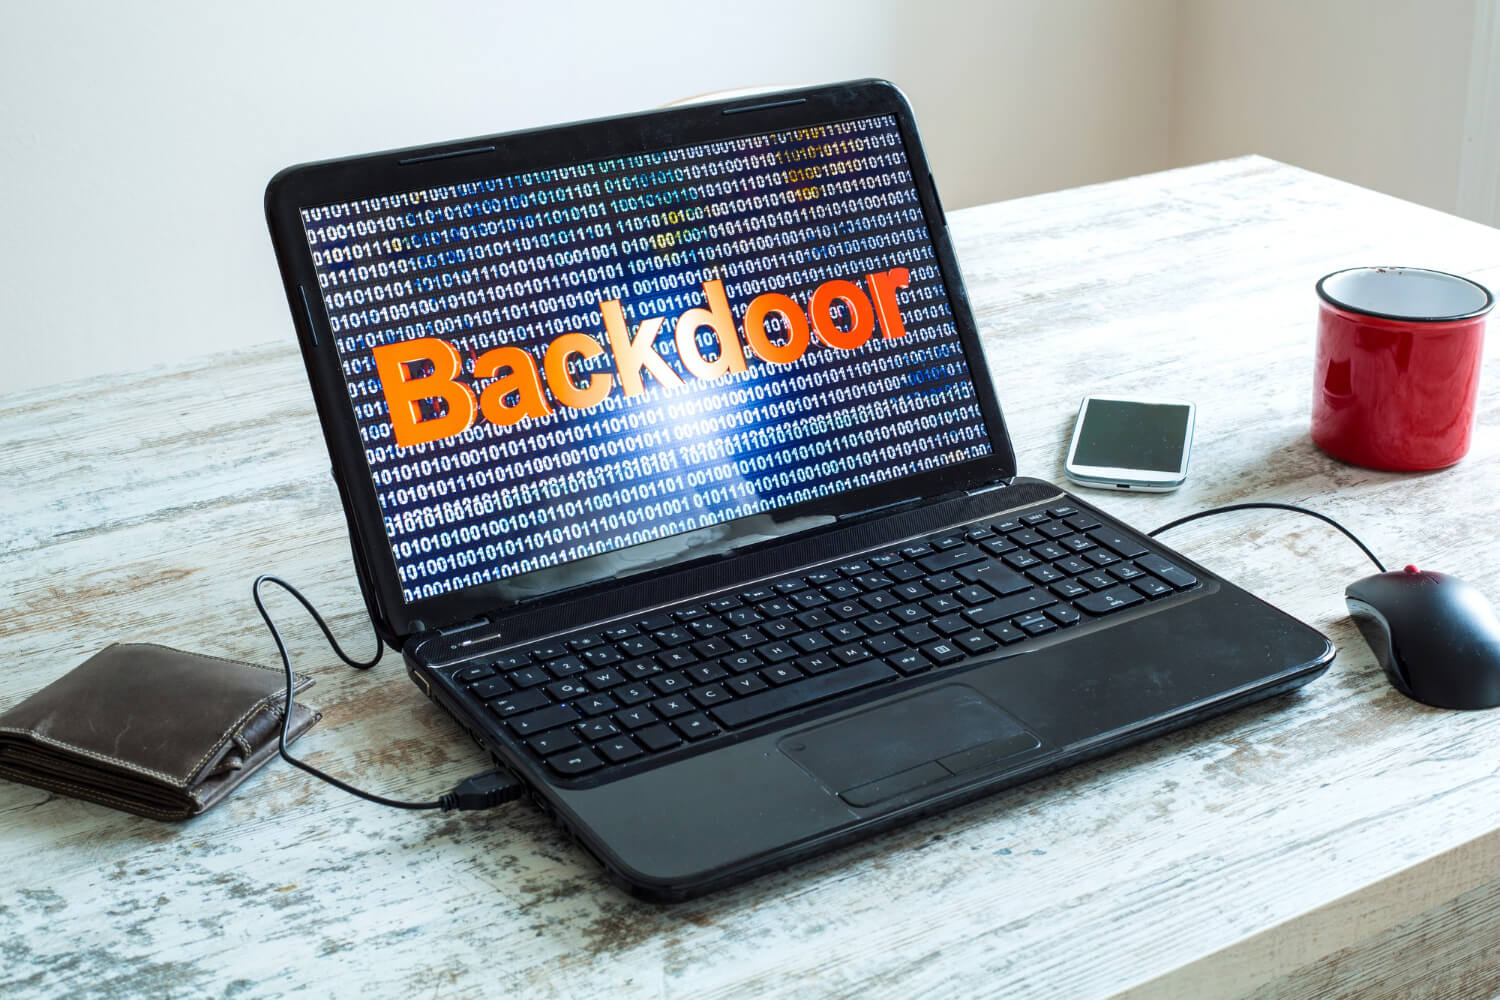 hardware-backdoor-laptop-computer